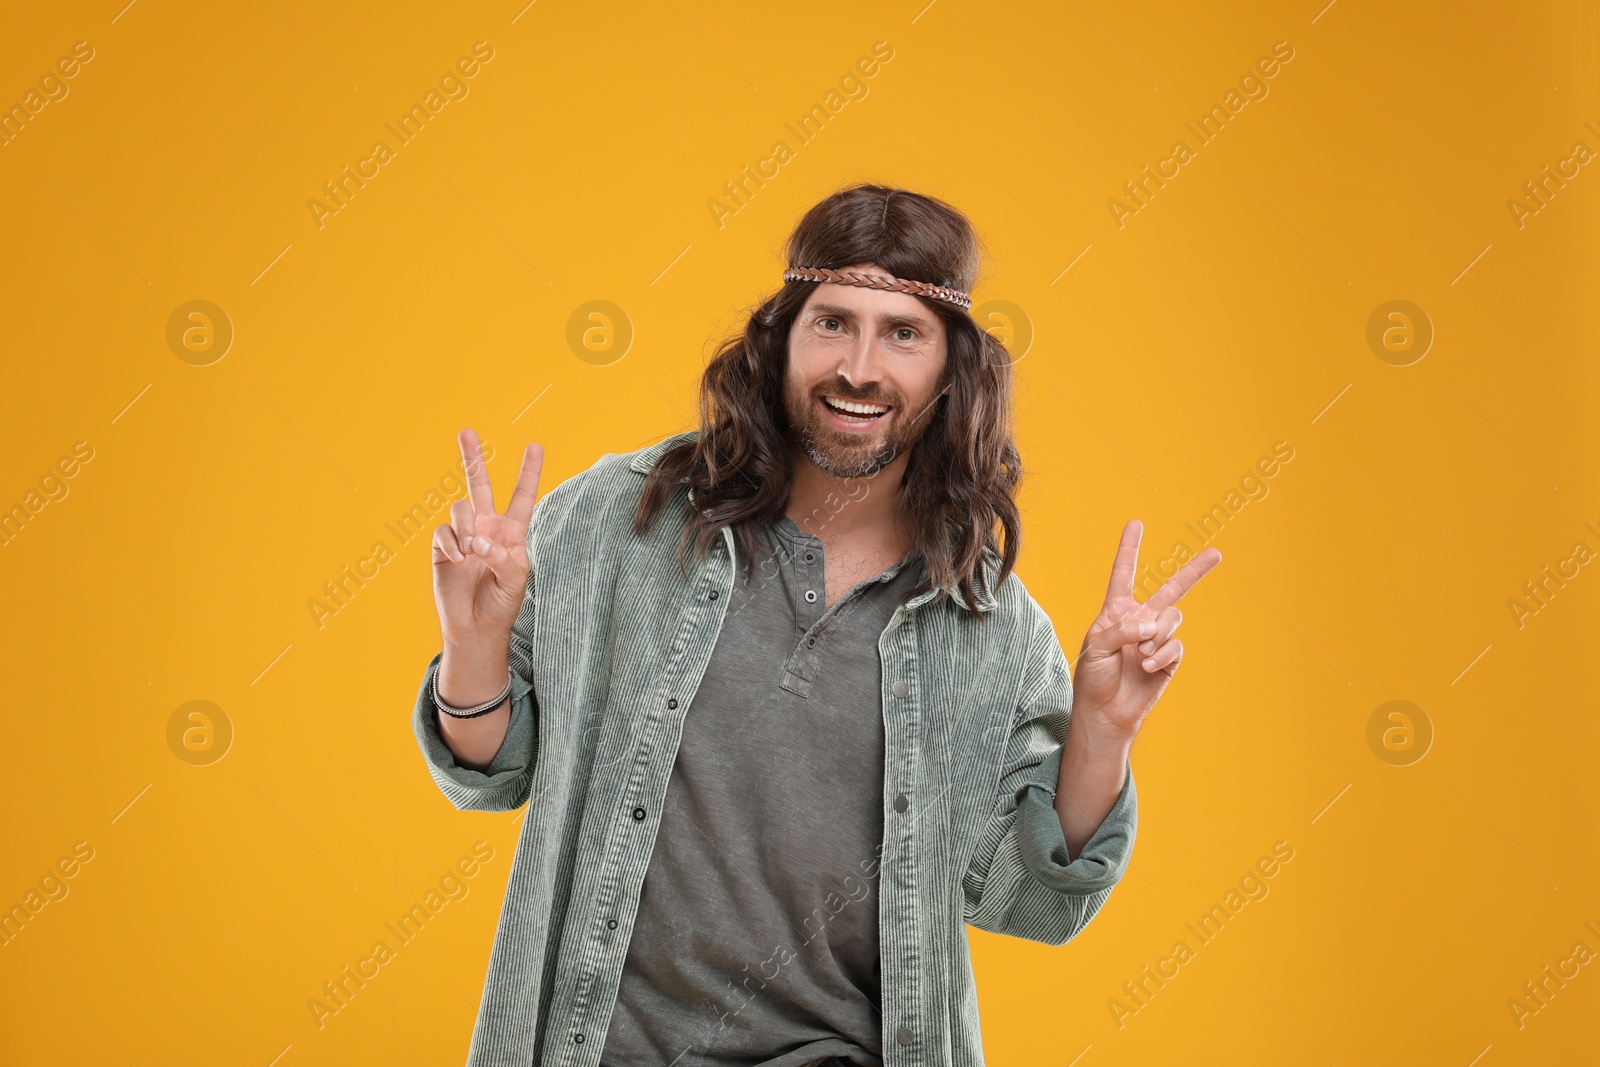 Photo of Stylish hippie man showing V-sign on orange background